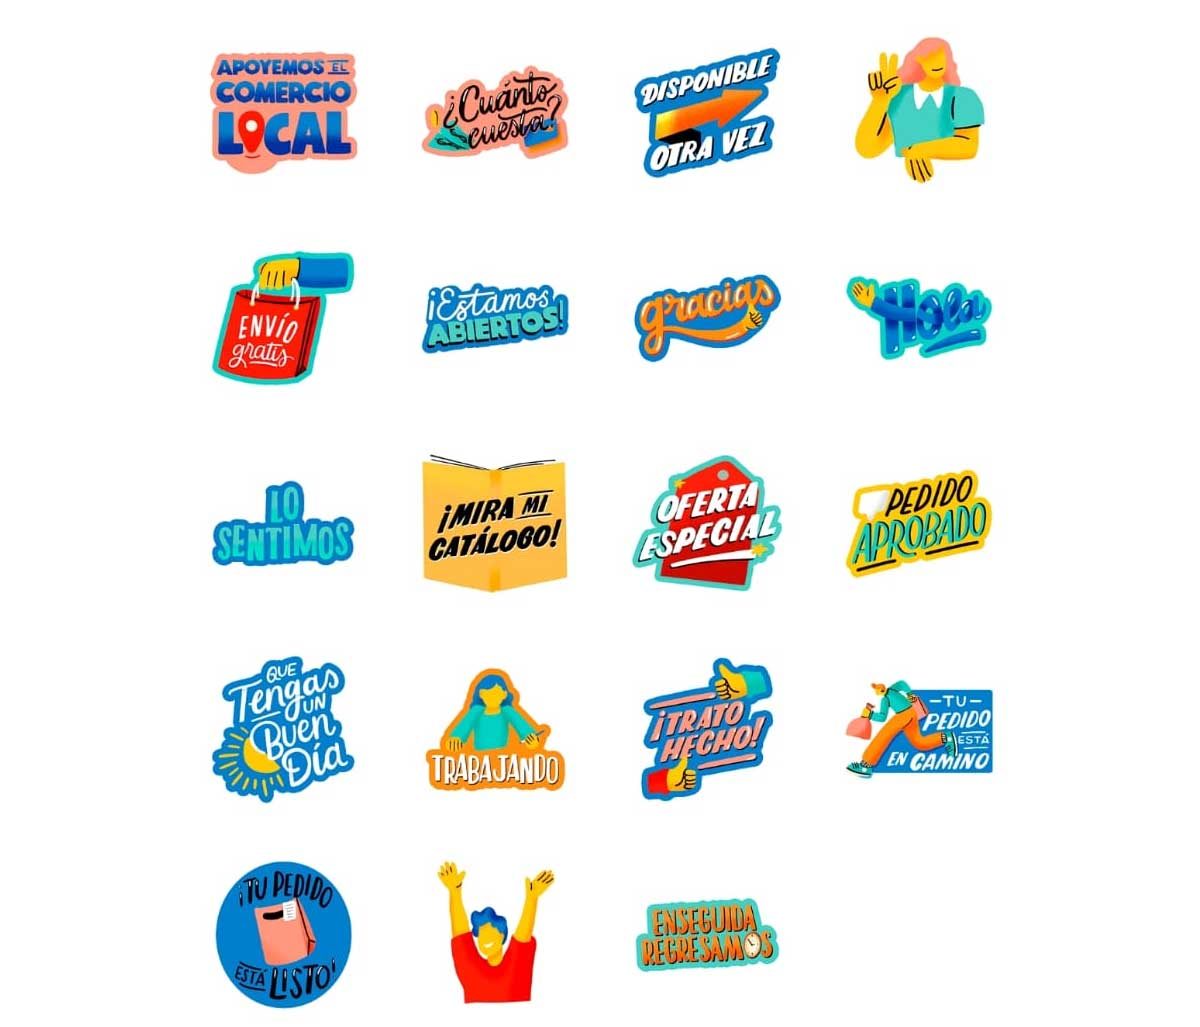 WhatsApp estrena una nueva colección de stickers animados para negocios